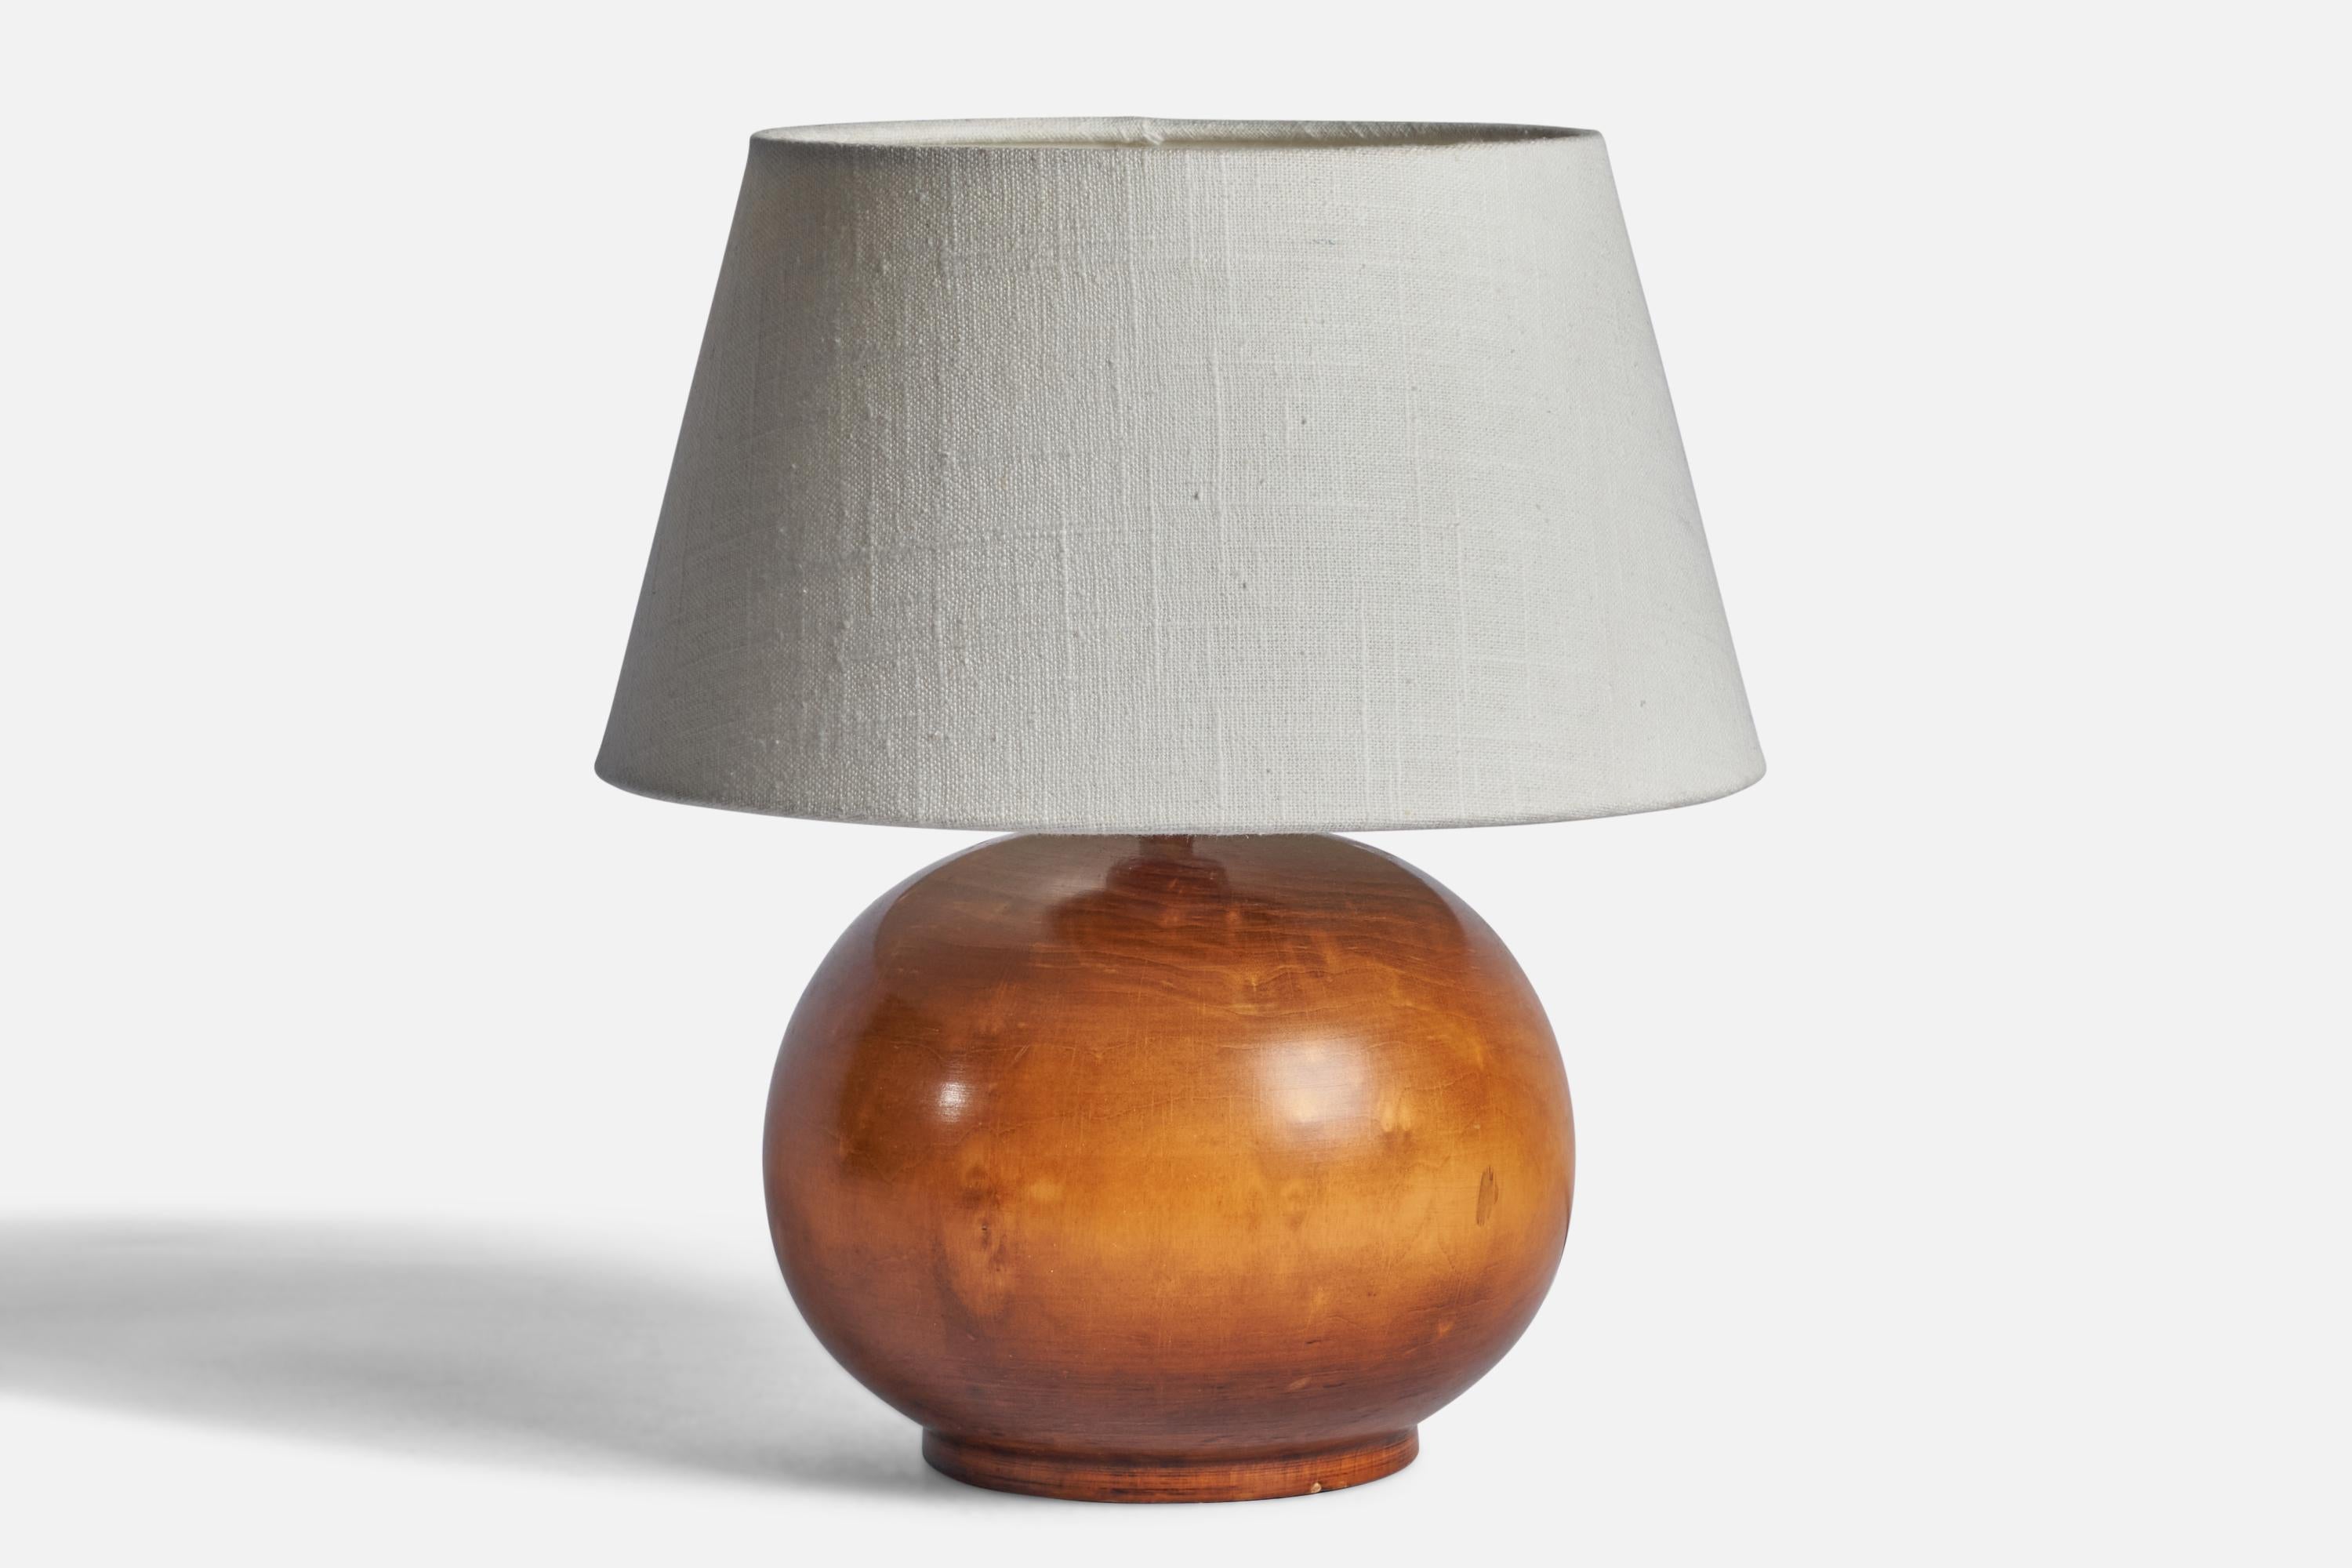 Lampe de table en bois laqué conçue et fabriquée en Suède, C.C.

Dimensions de la lampe (pouces) : 8.45